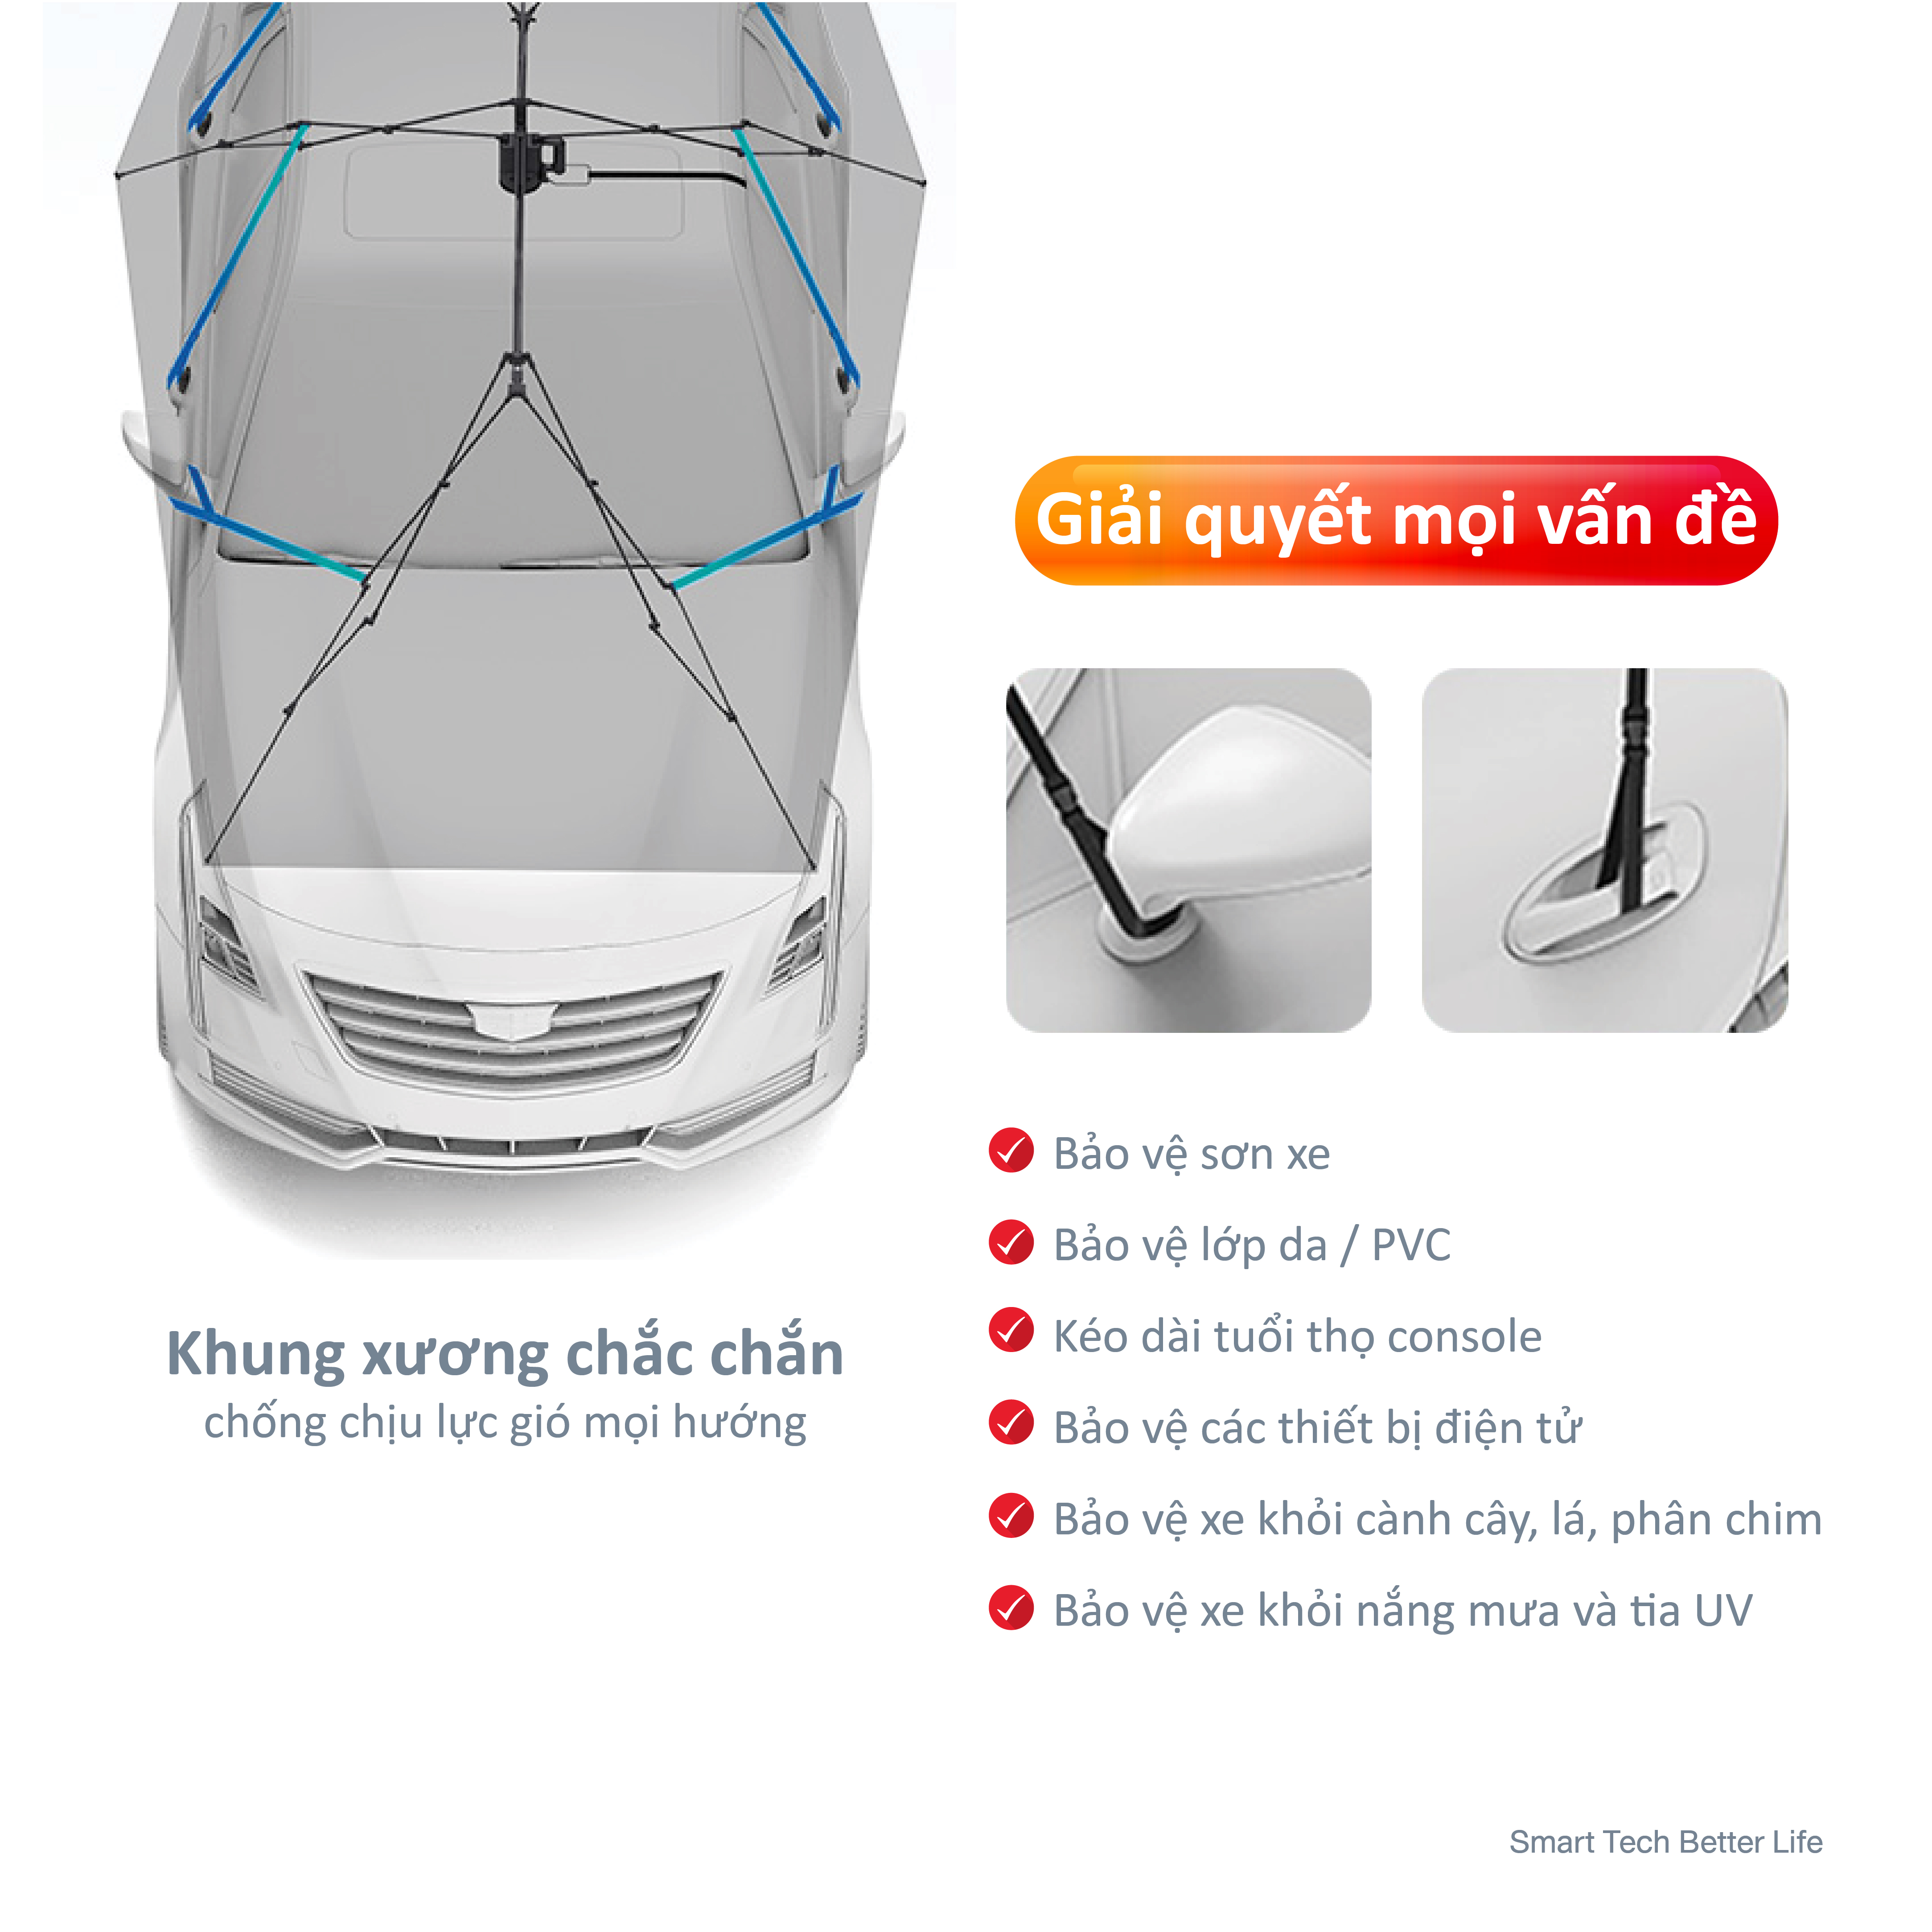 Dù che ô tô thông minh VAYO - Smart Car Umbrella - Hàng chính hãng - điều khiển tự động bằng remote, tháo rời, giảm nhiệt độ 60%, bảo vệ nội thất xe hơi